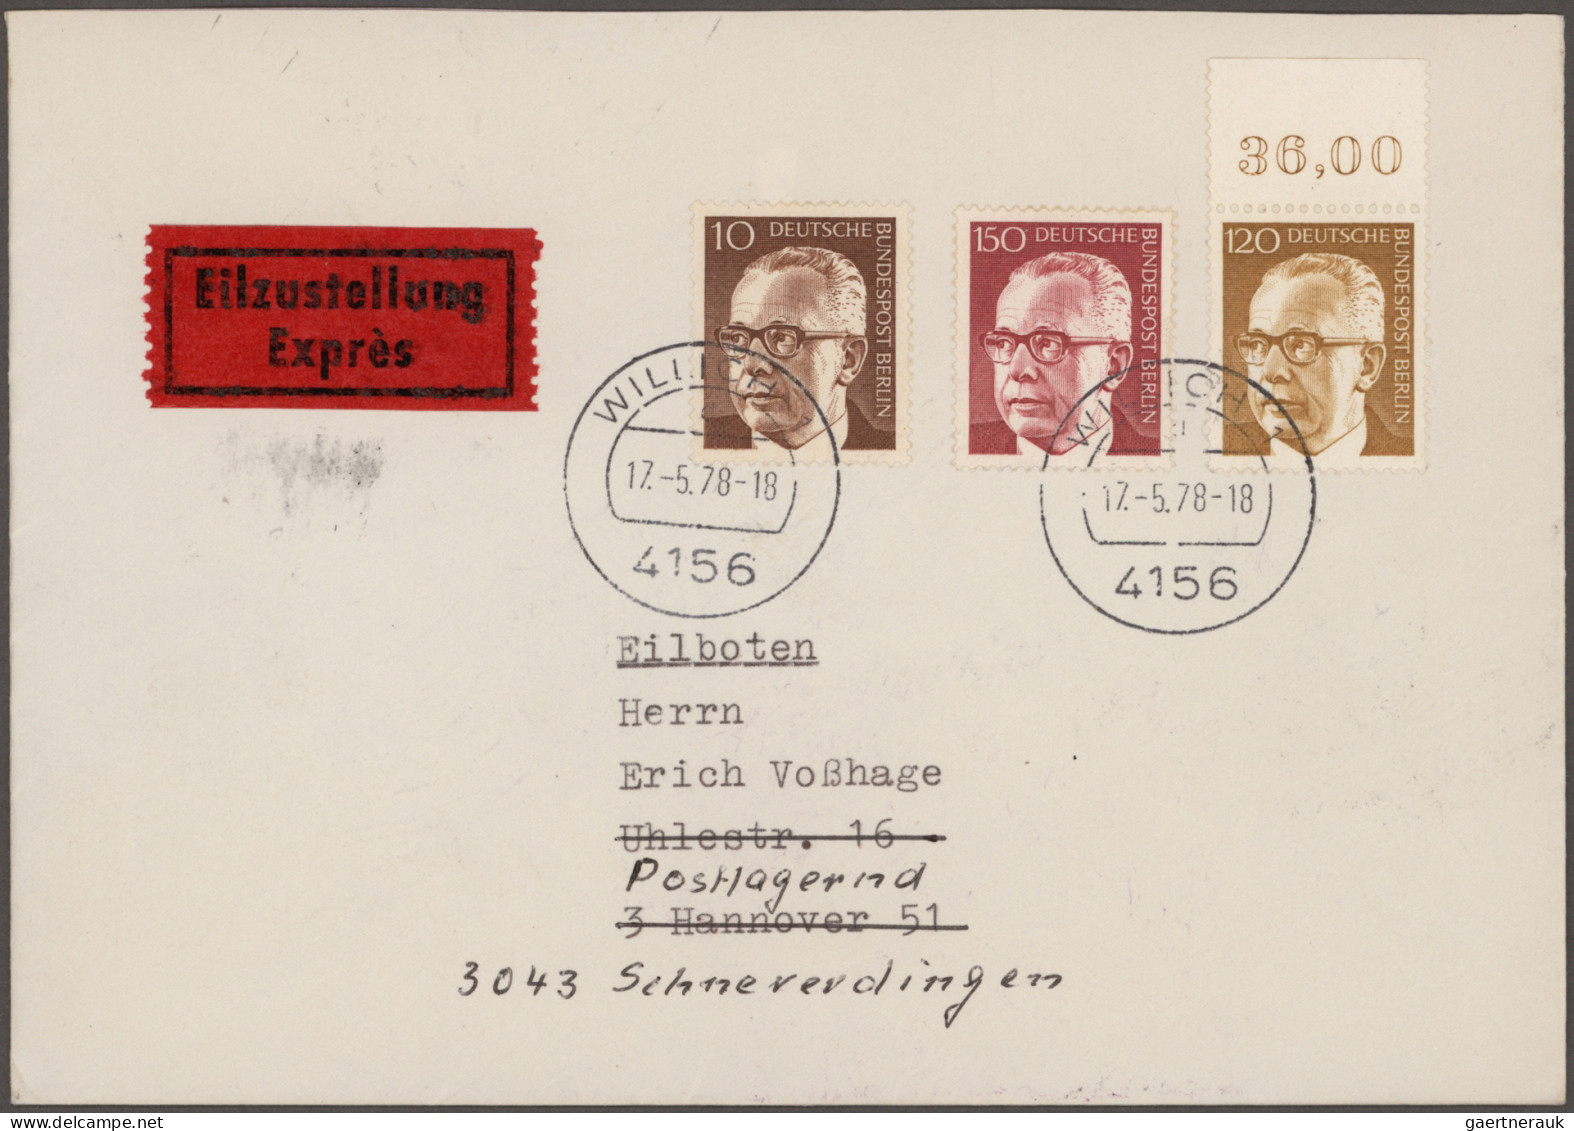 Berlin: 1955/1991, Partie von ca. 200 Briefen und Karten in netter Vielfalt, dab